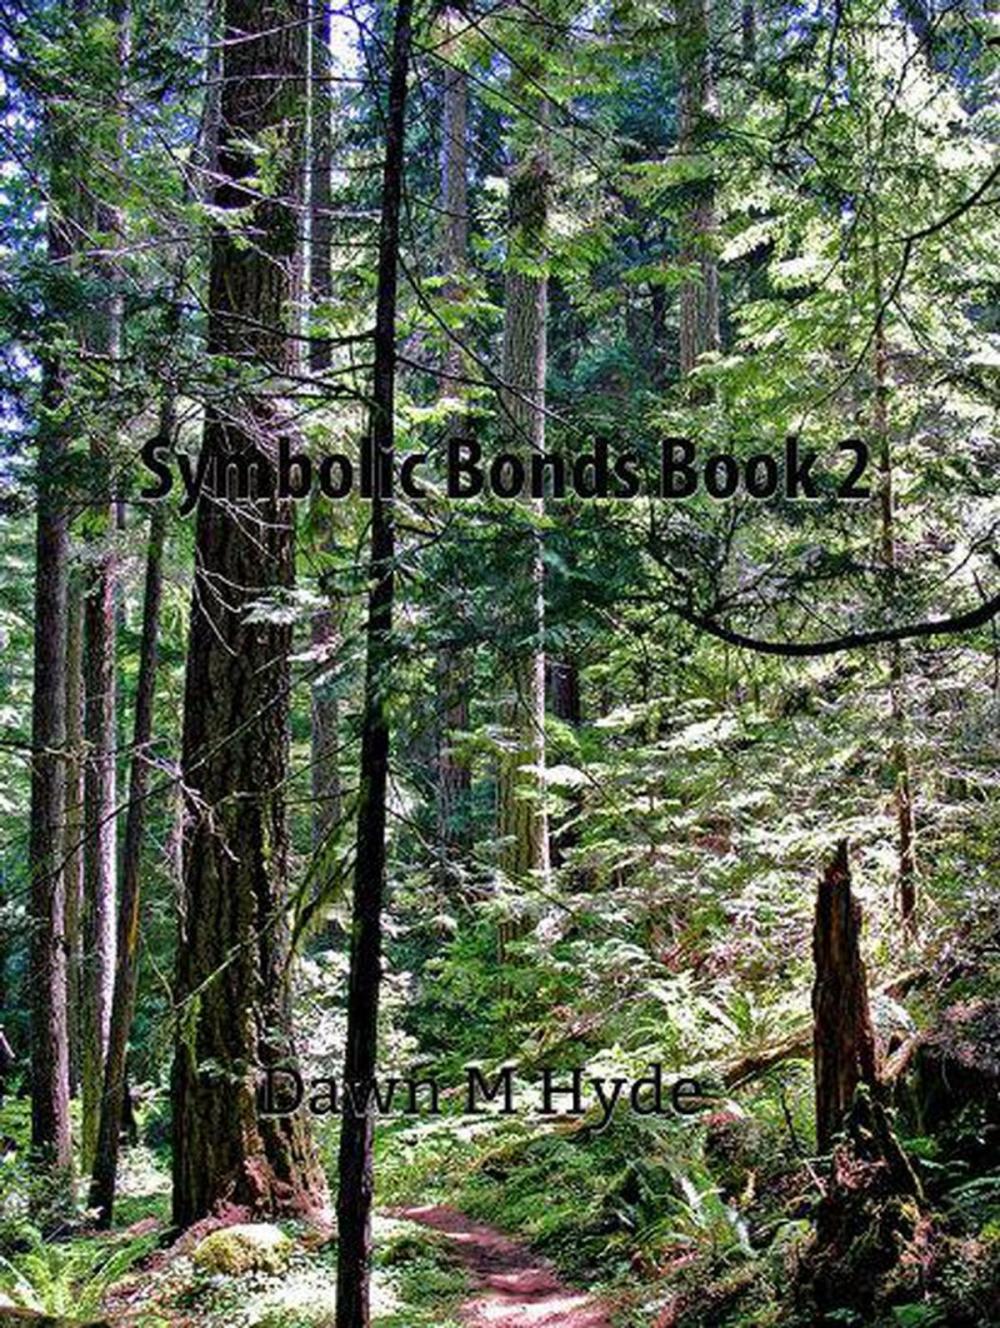 Big bigCover of Symbolic Bonds Book 2